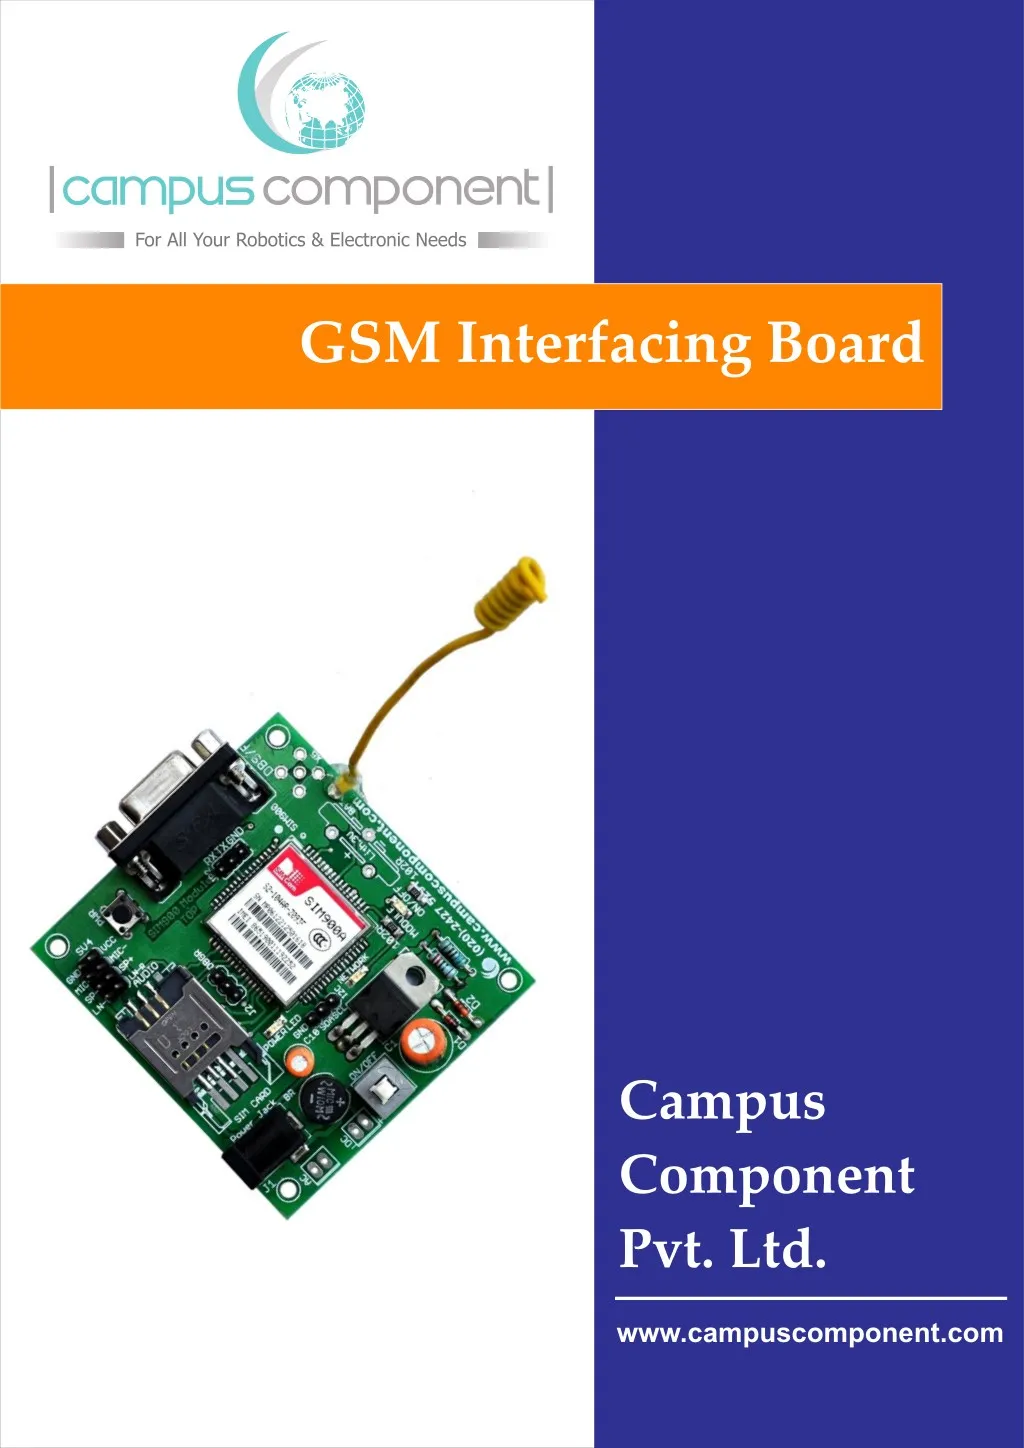 gsm interfacing board